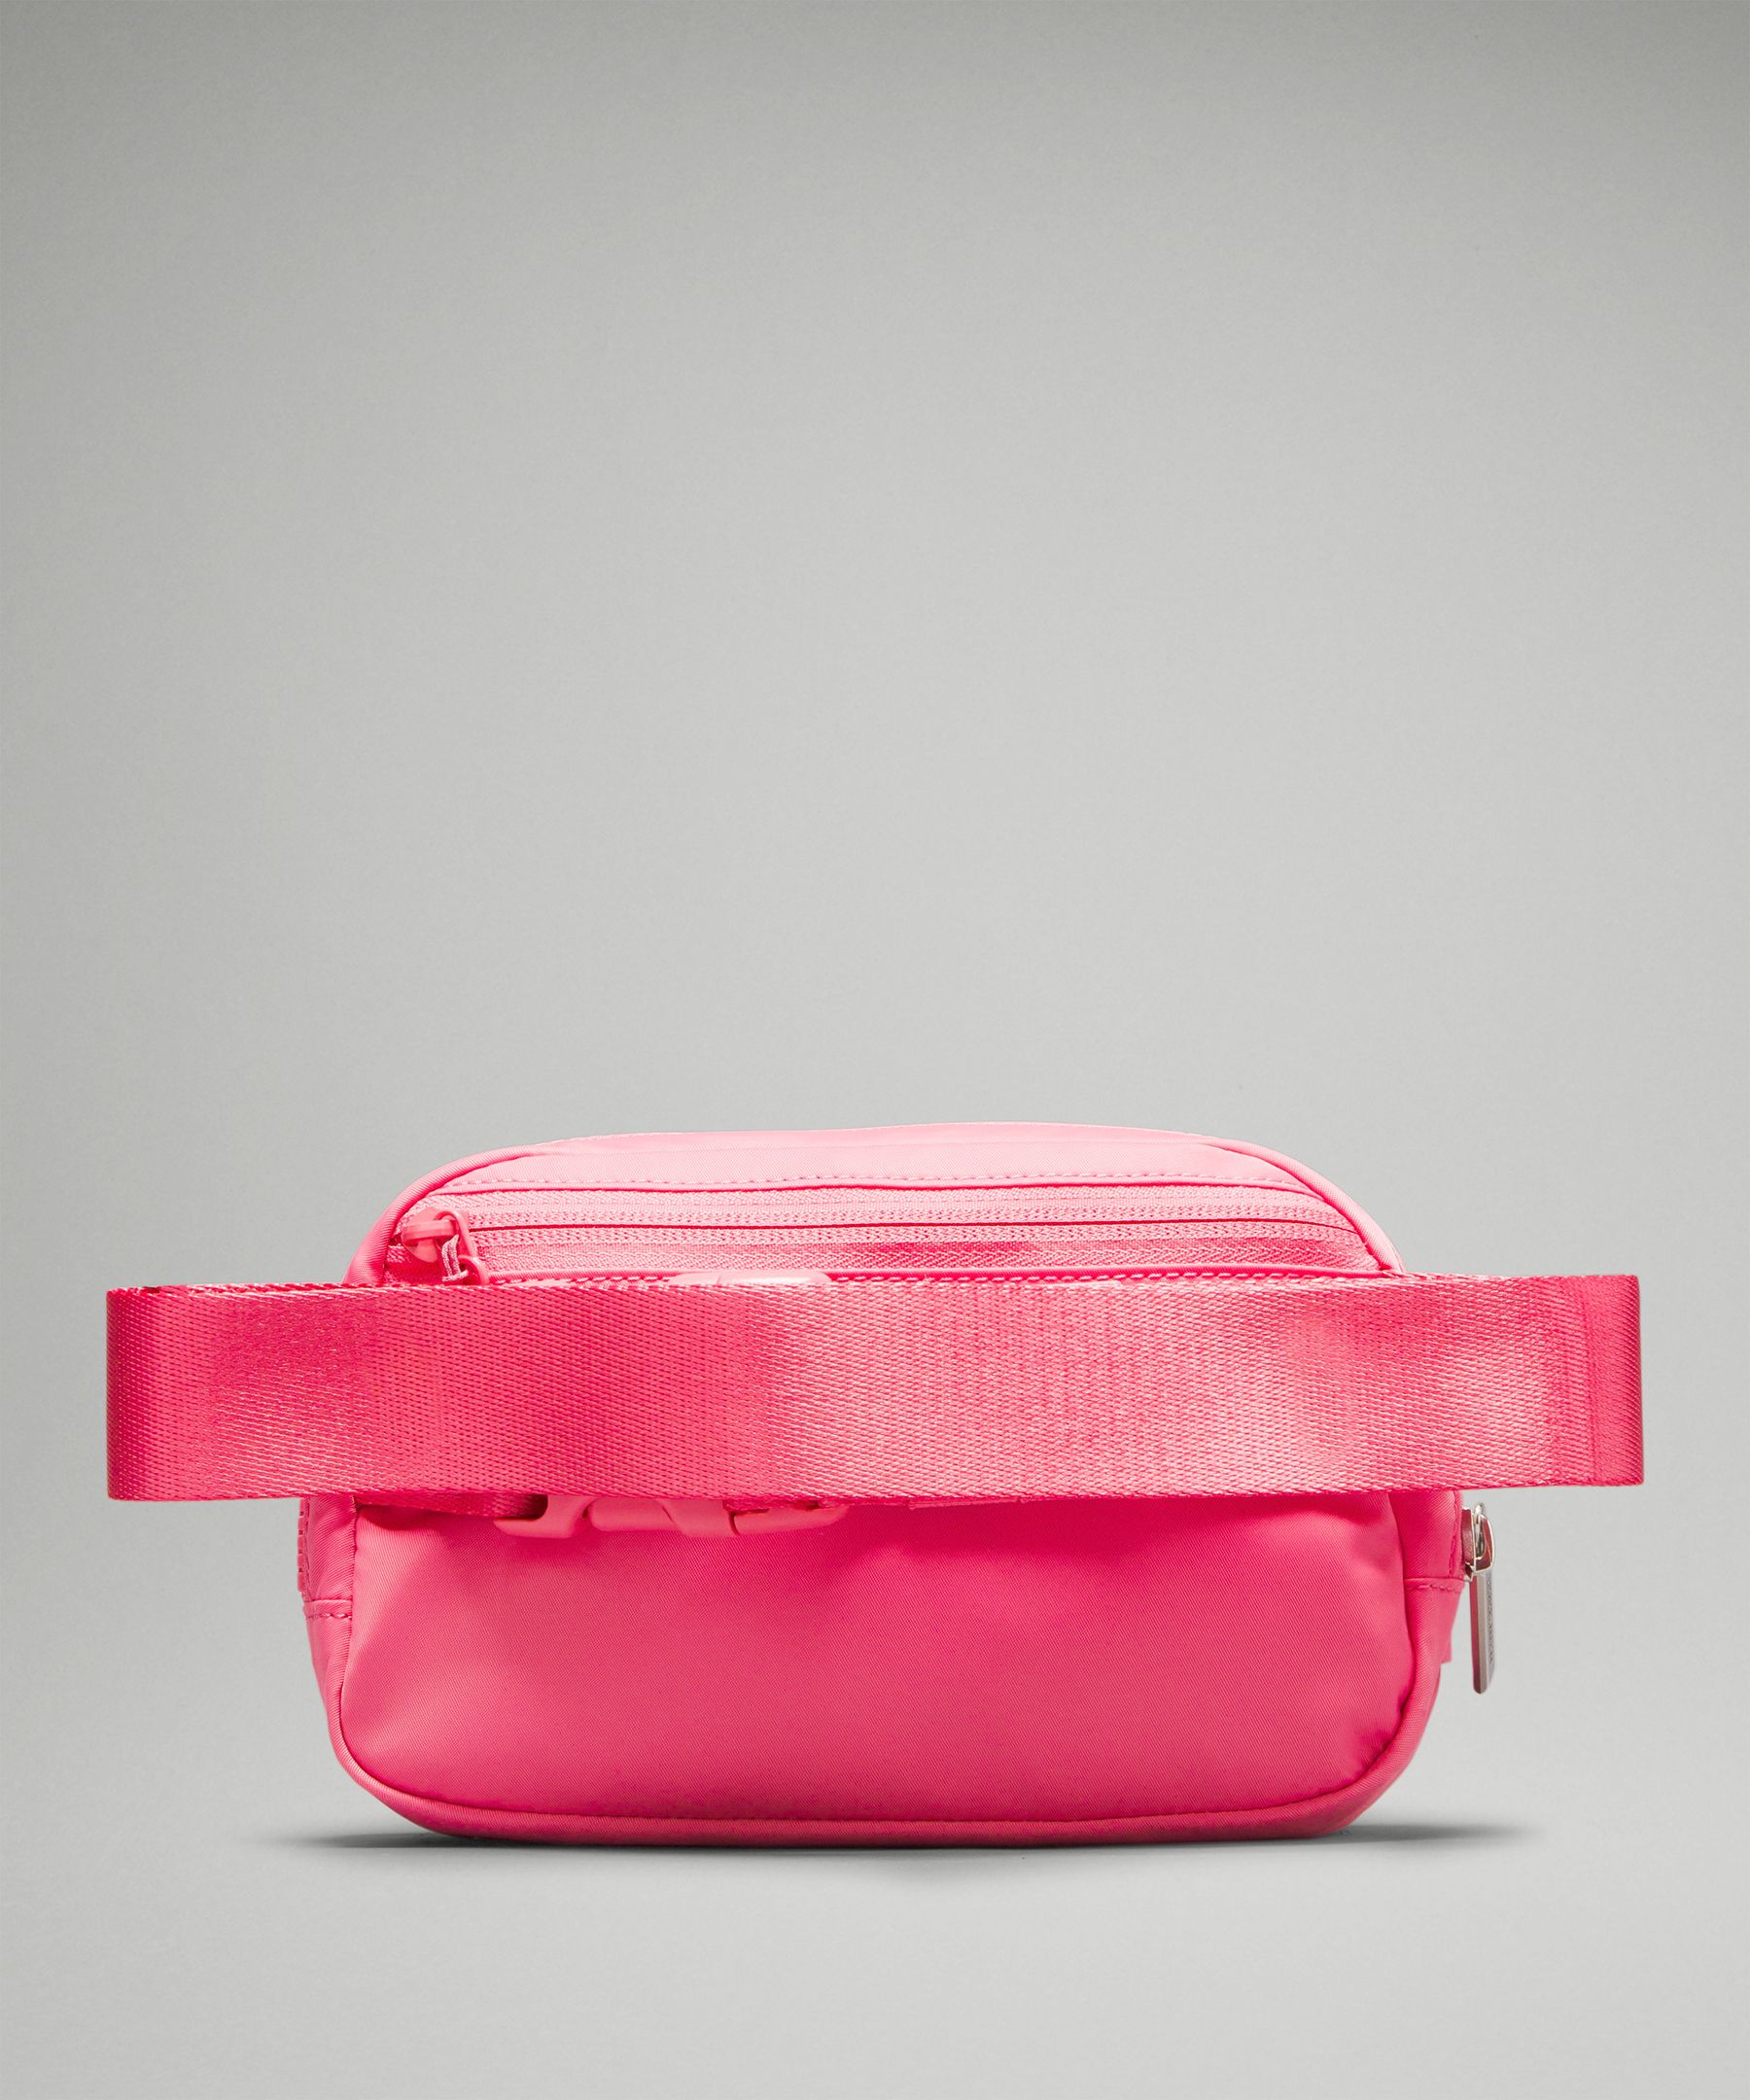 Lululemon Everywhere Belt Bag Crossbody Bag Red Merlot in Waterproof  Polyester - US